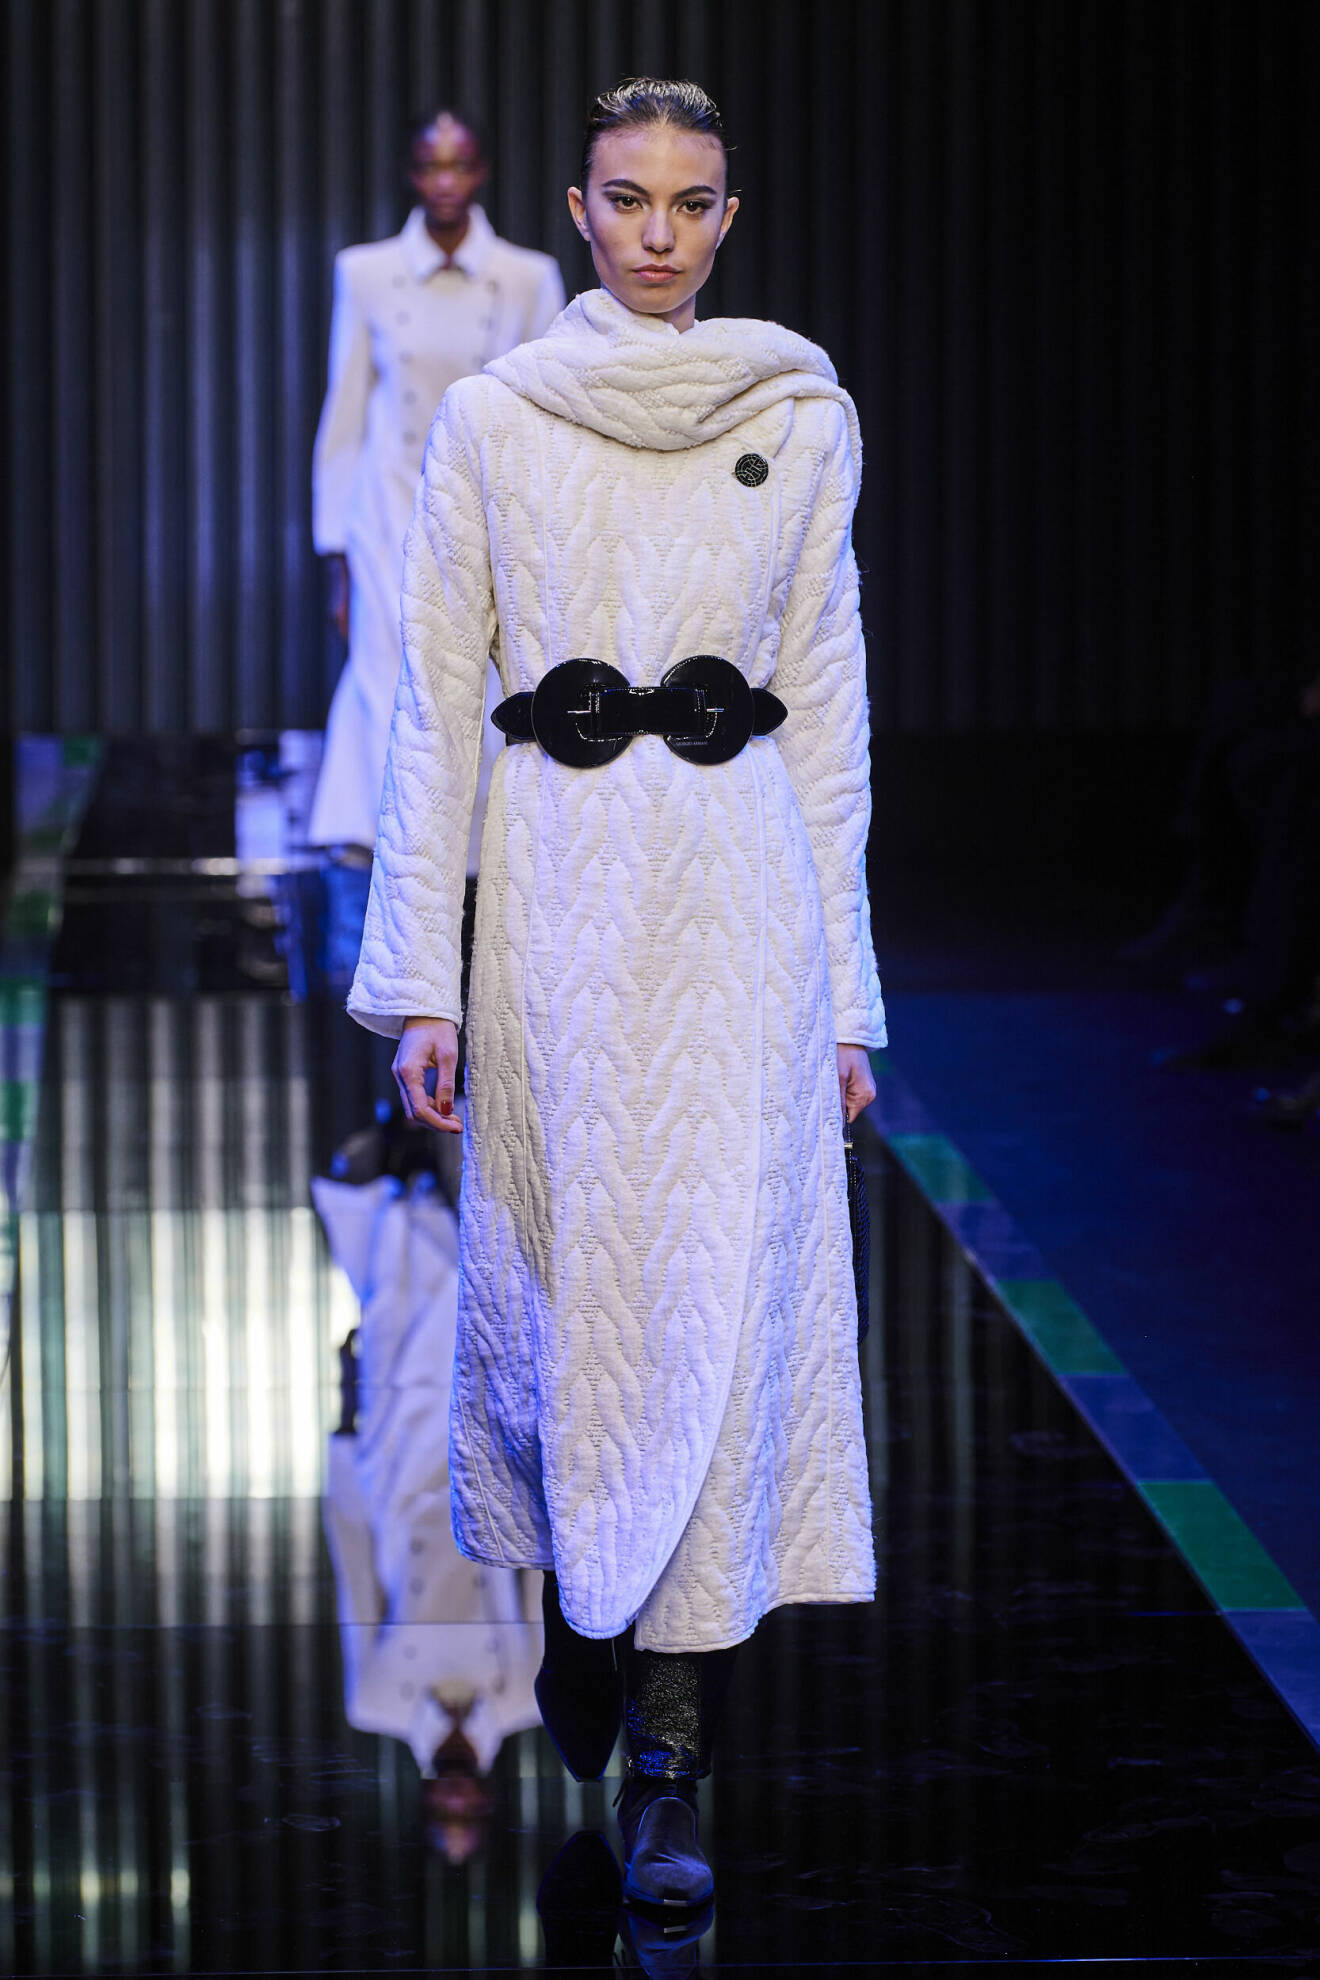 Armani visade upp sin kollektion under tystnad under Milano Fashion Week för att lyfta kriget i Ukraina.